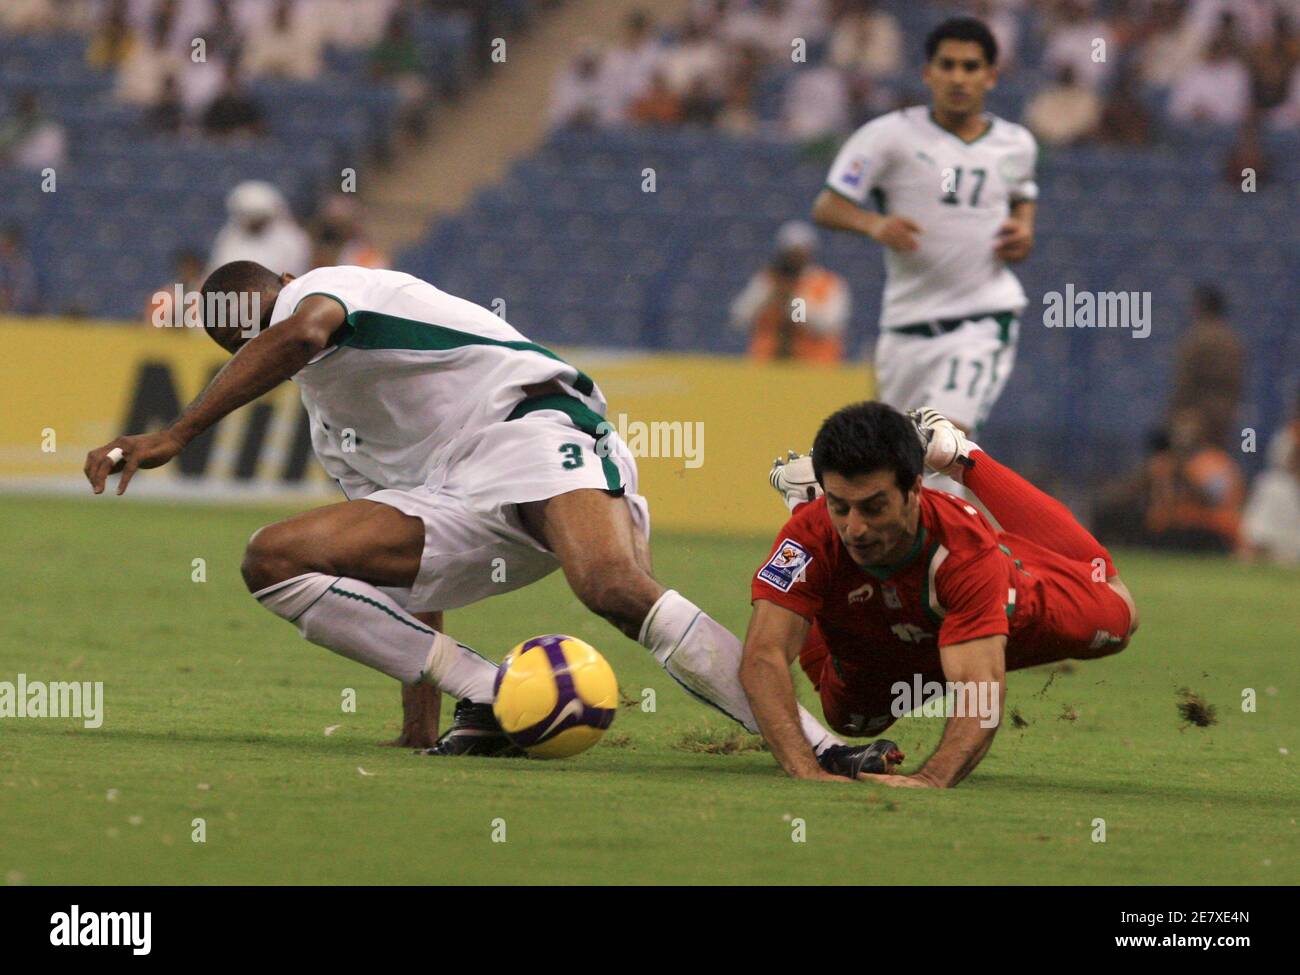 Redha Taker (L) dell'Arabia Saudita combatte per la palla con il Ghoulam Rezaei dell'Iran durante la loro partita di calcio di qualificazione della Coppa del mondo 2010 a Riyadh il 6 settembre 2008. REUTERS/Fahad Shadeed (ARABIA SAUDITA) Foto Stock